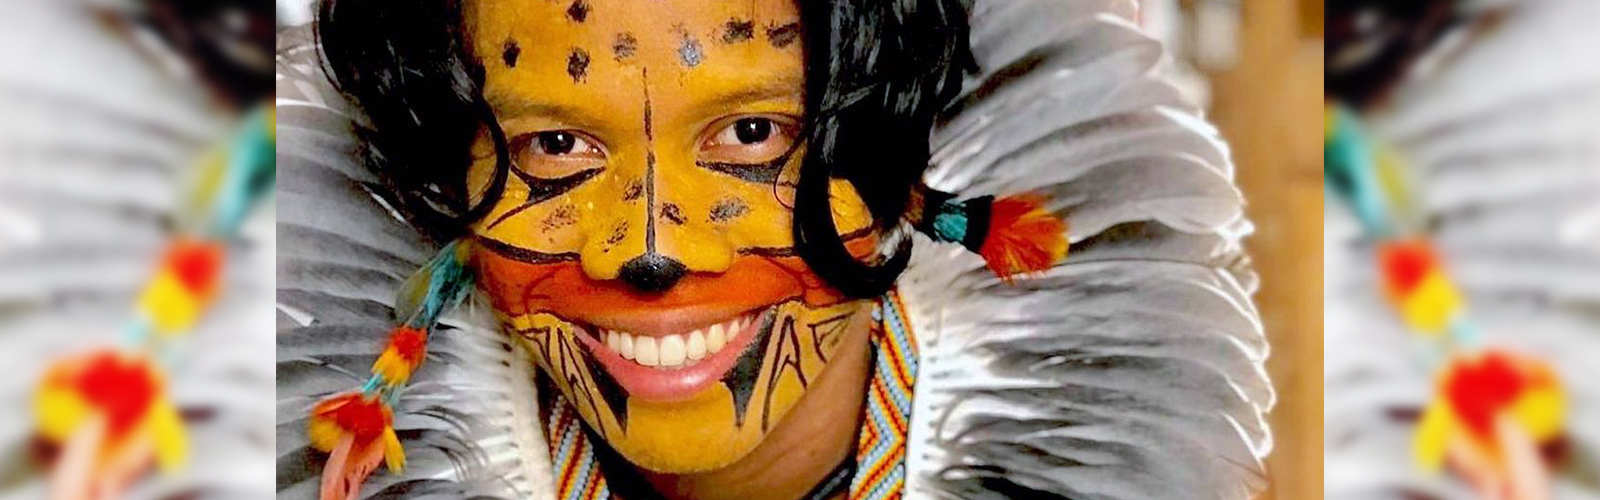 Tukumã Pataxó se destaca pelo ativismo indígena e aparece com pintura no rosto que se assemelha a uma onça, além de um cocar na cabeça, com penas em tons de cinza.